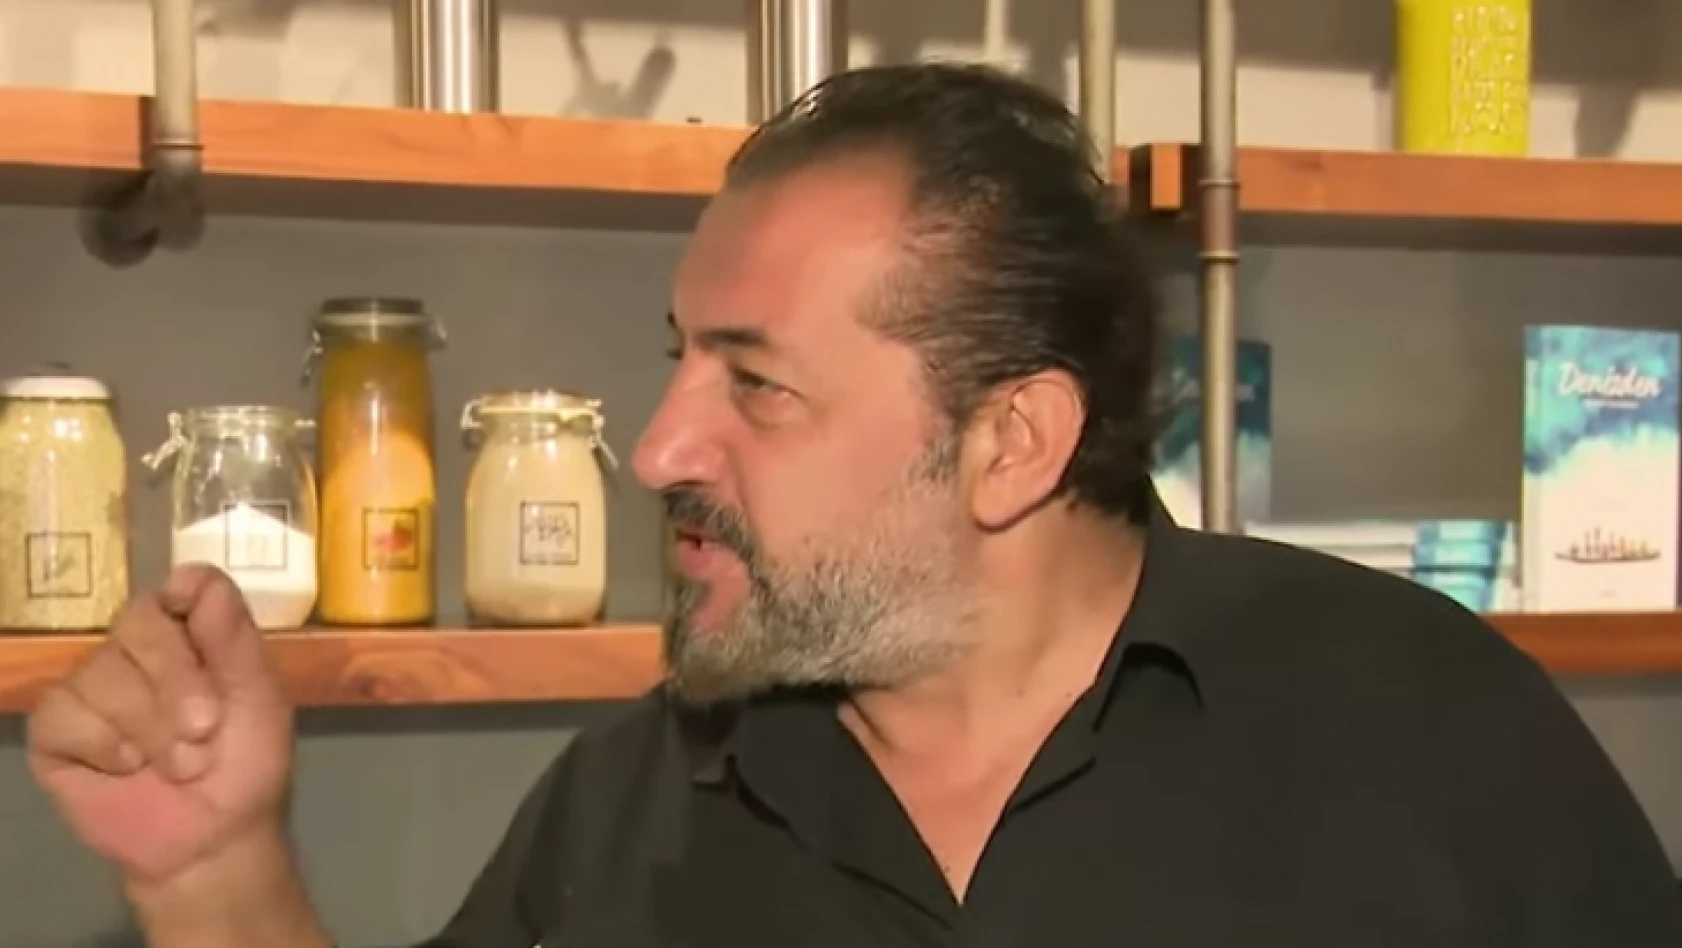 Şef Mehmet Yalçınkaya, neden her yemeğe şeker atıyor?